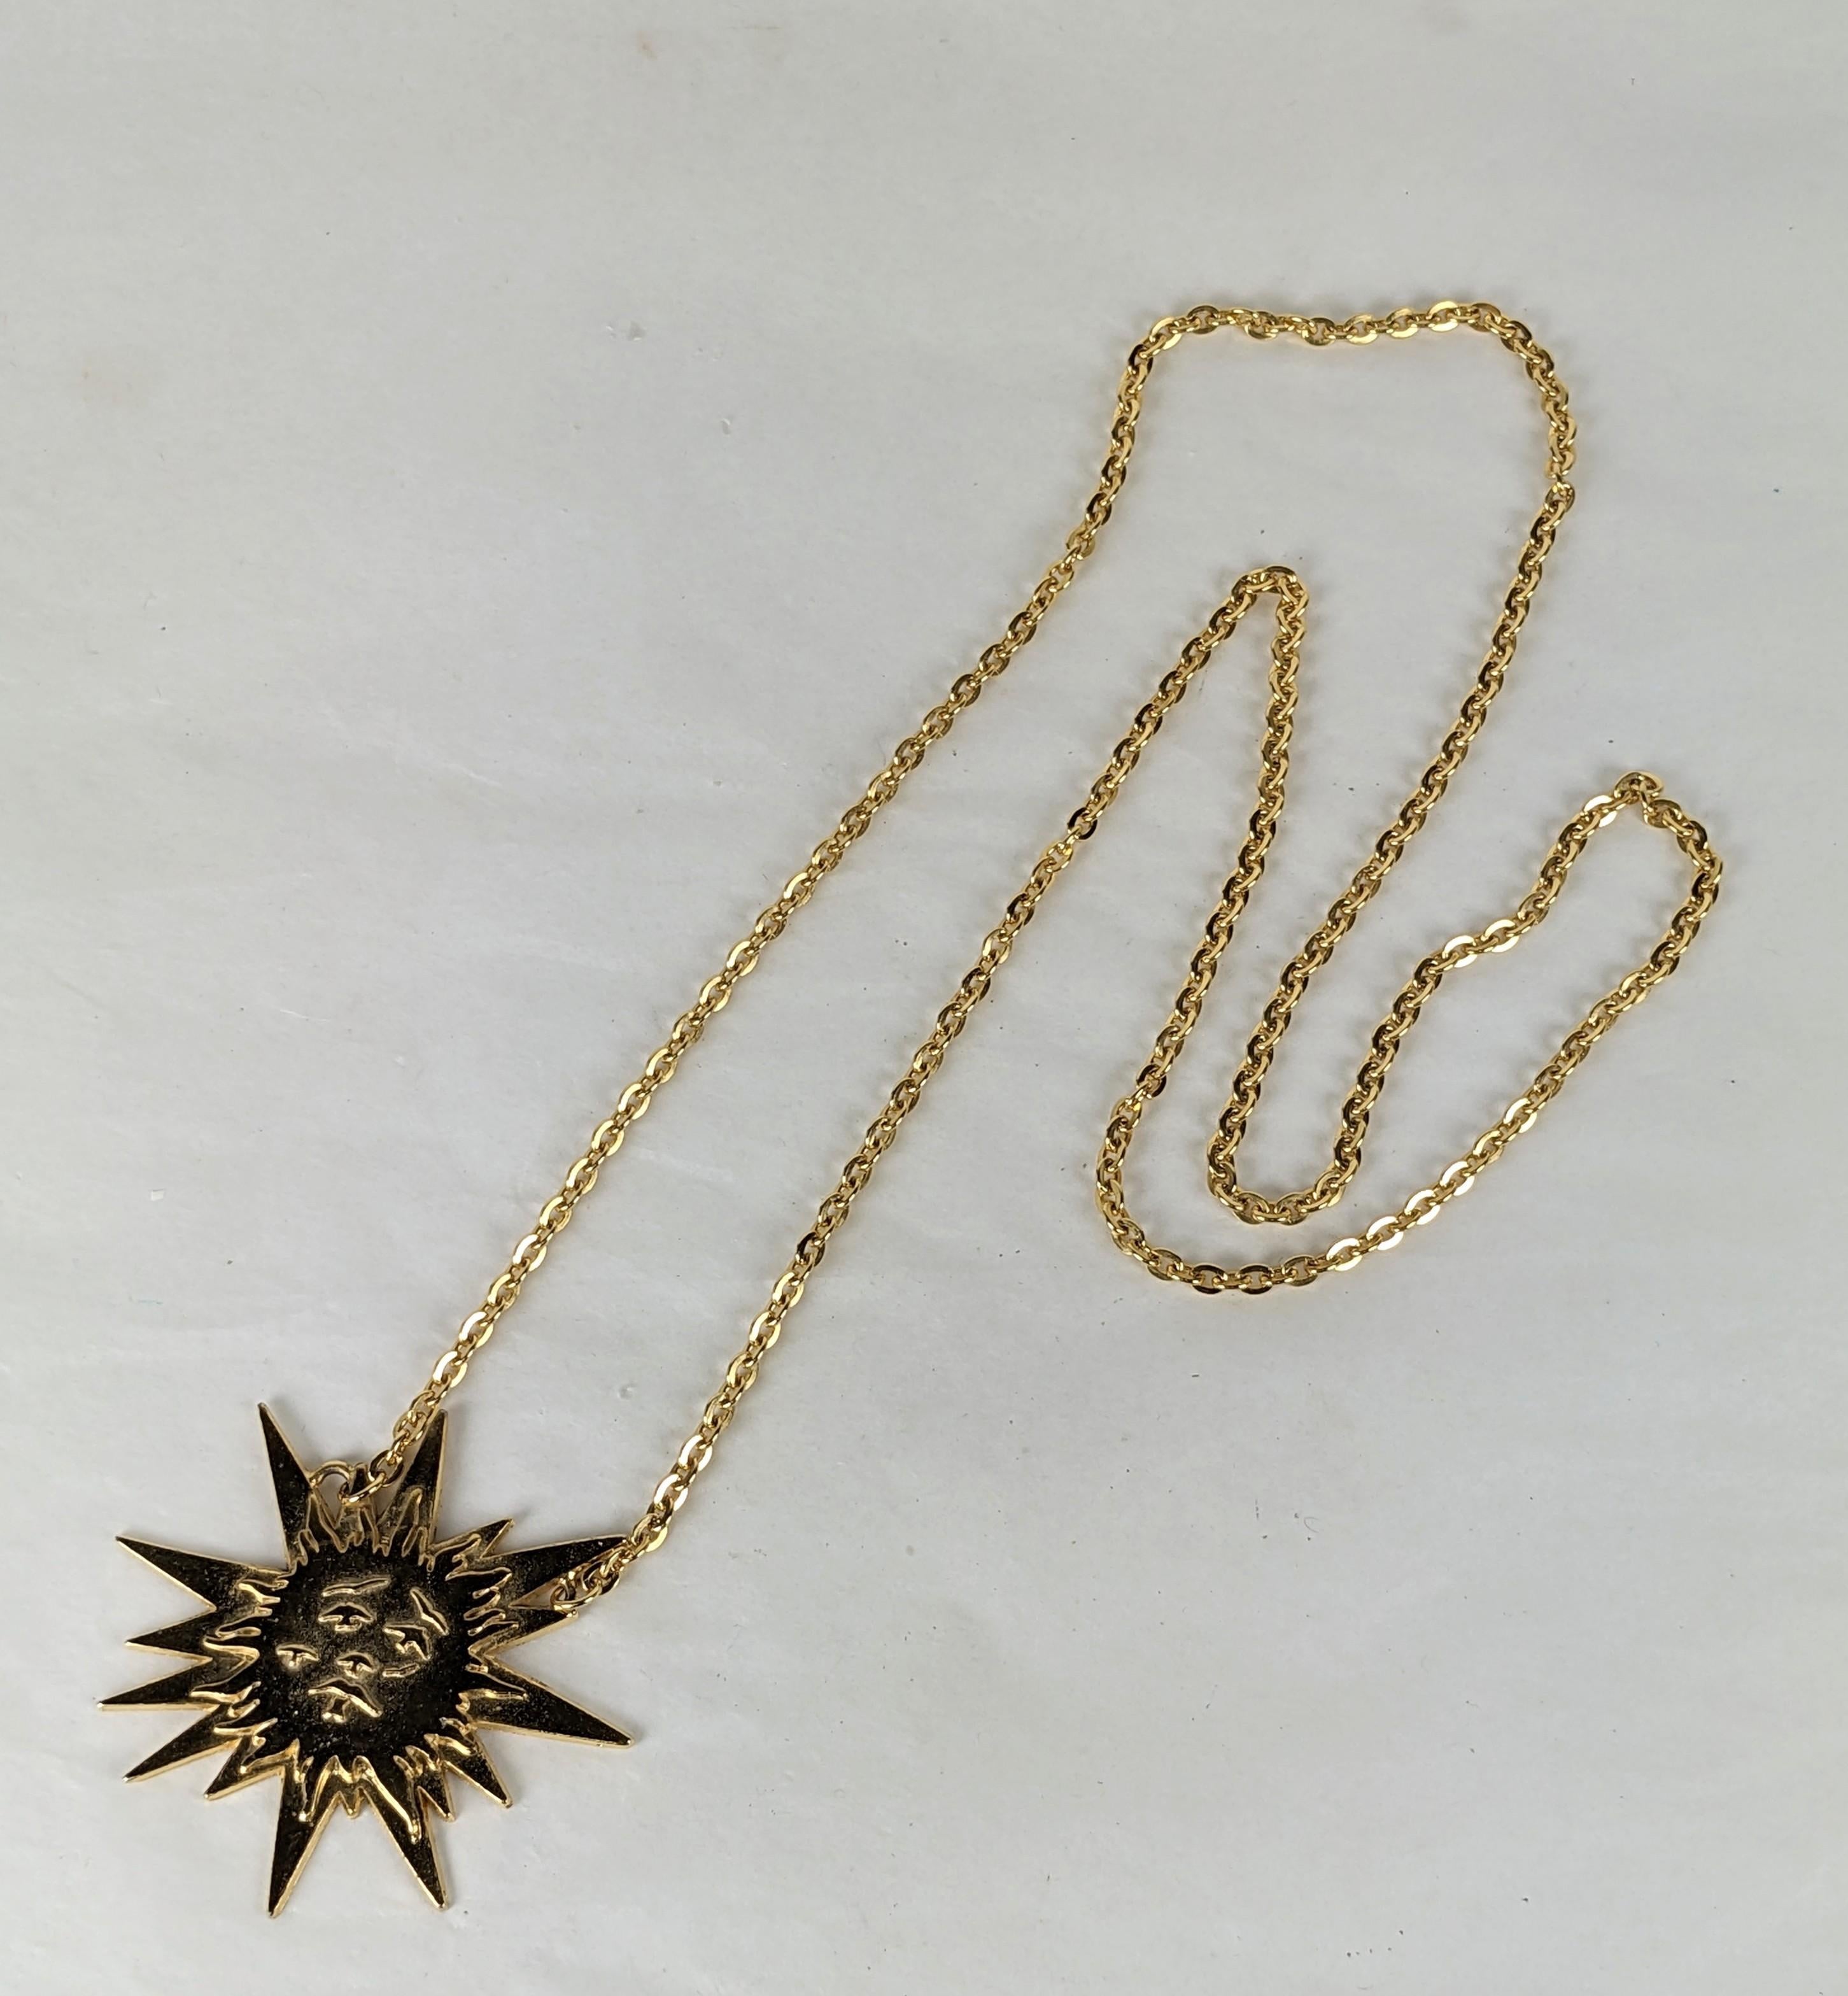 Salvador Dail Le Roi Soleil Rare Collier à pendentifs réalisé pour le lancement du parfum.
Le Roi Soleil est un parfum d'Elsa Schiaparelli produit en 1947, pour célébrer la fin de la guerre mondiale en rappelant les heures de gloire de Louis XIV. Le